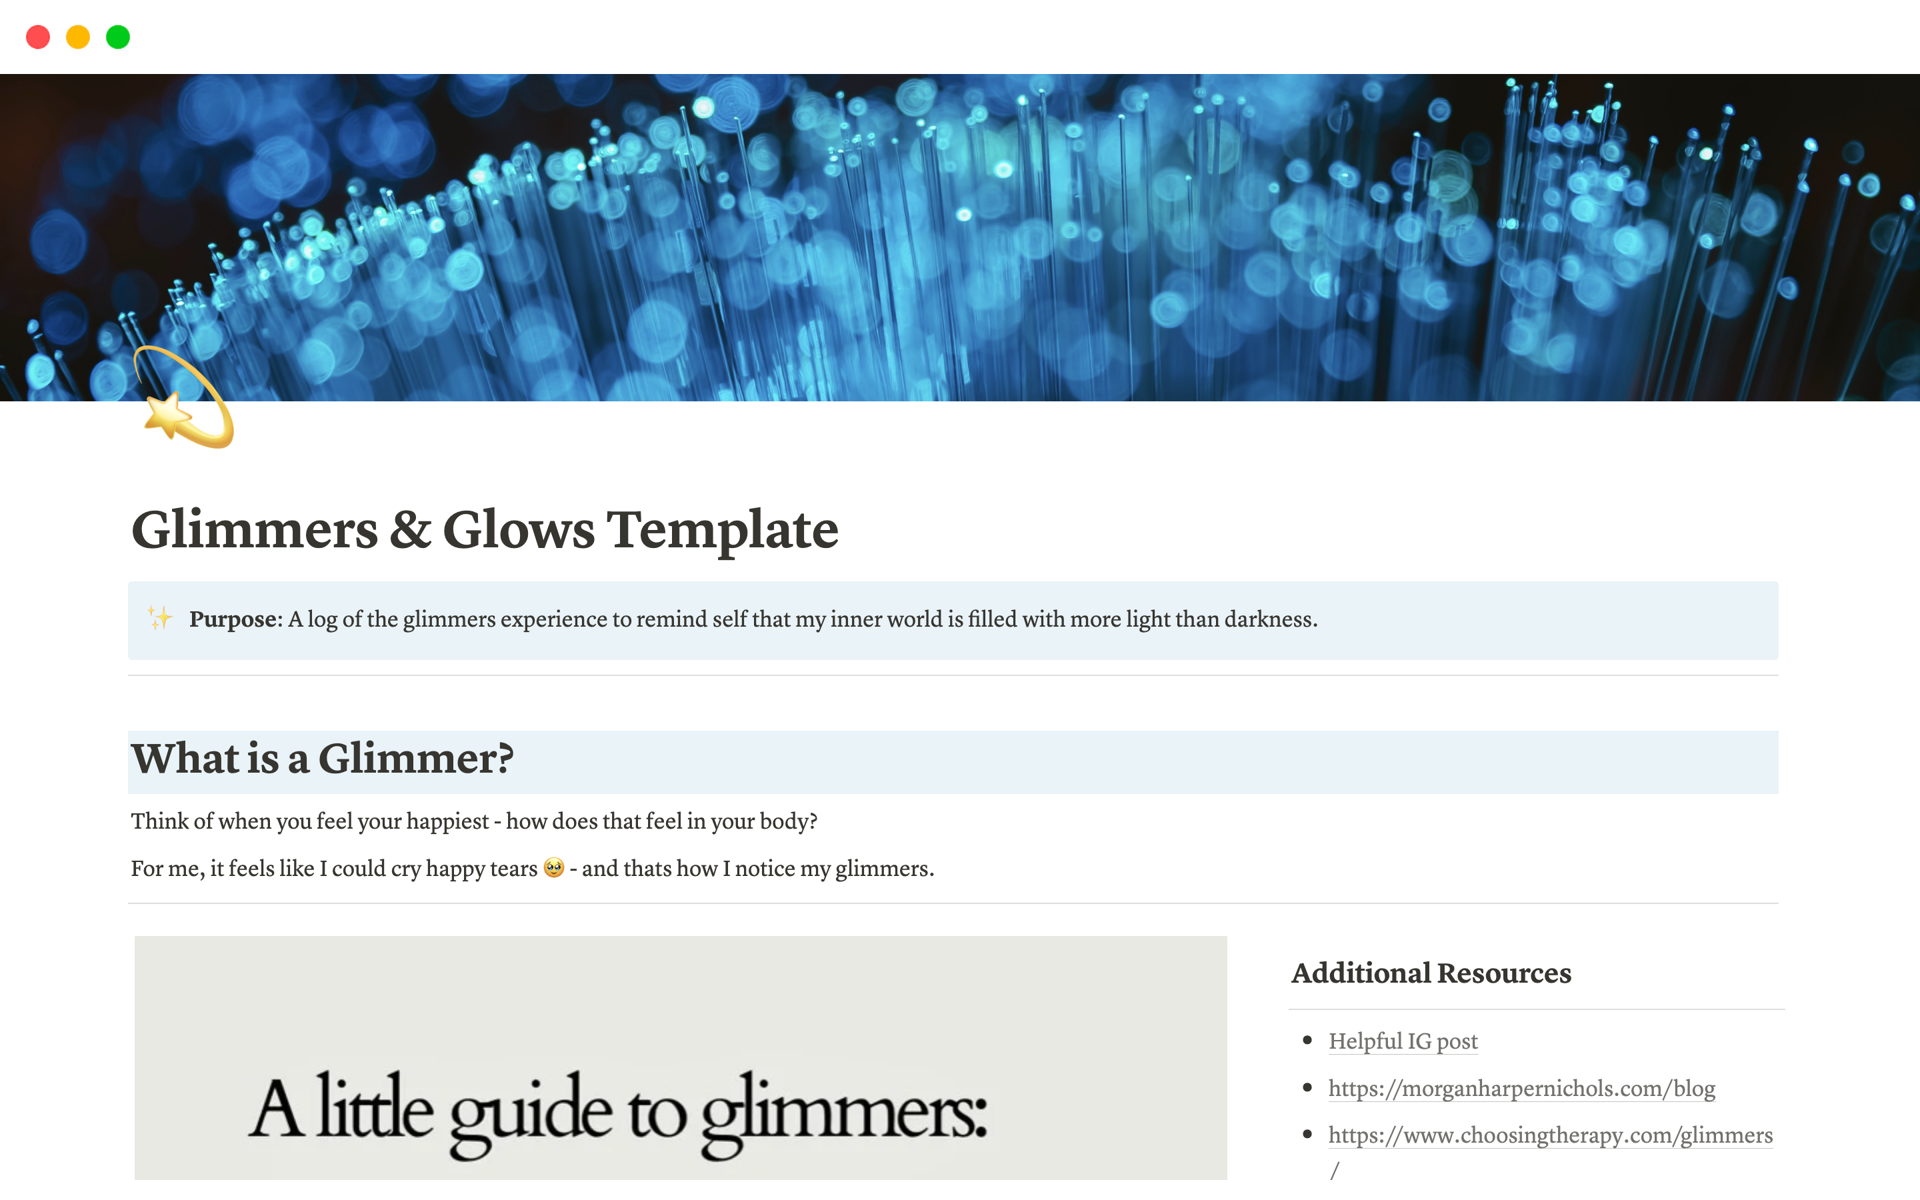 Vista previa de una plantilla para Glimmers & Glows